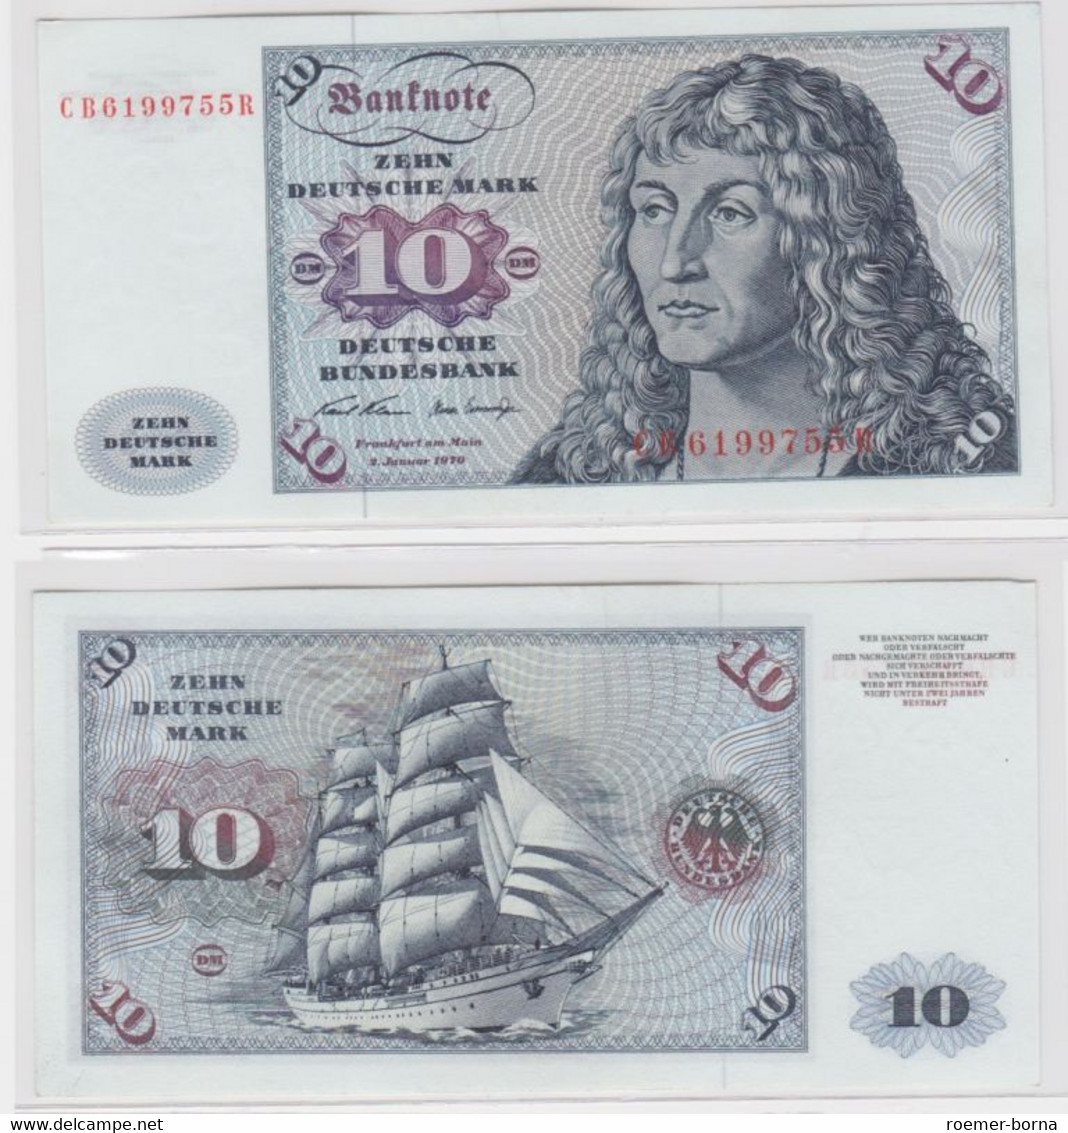 T144803 Banknote 10 DM Deutsche Mark Ro. 270a Schein 2.Jan. 1970 KN CB 6199755 R - 10 DM